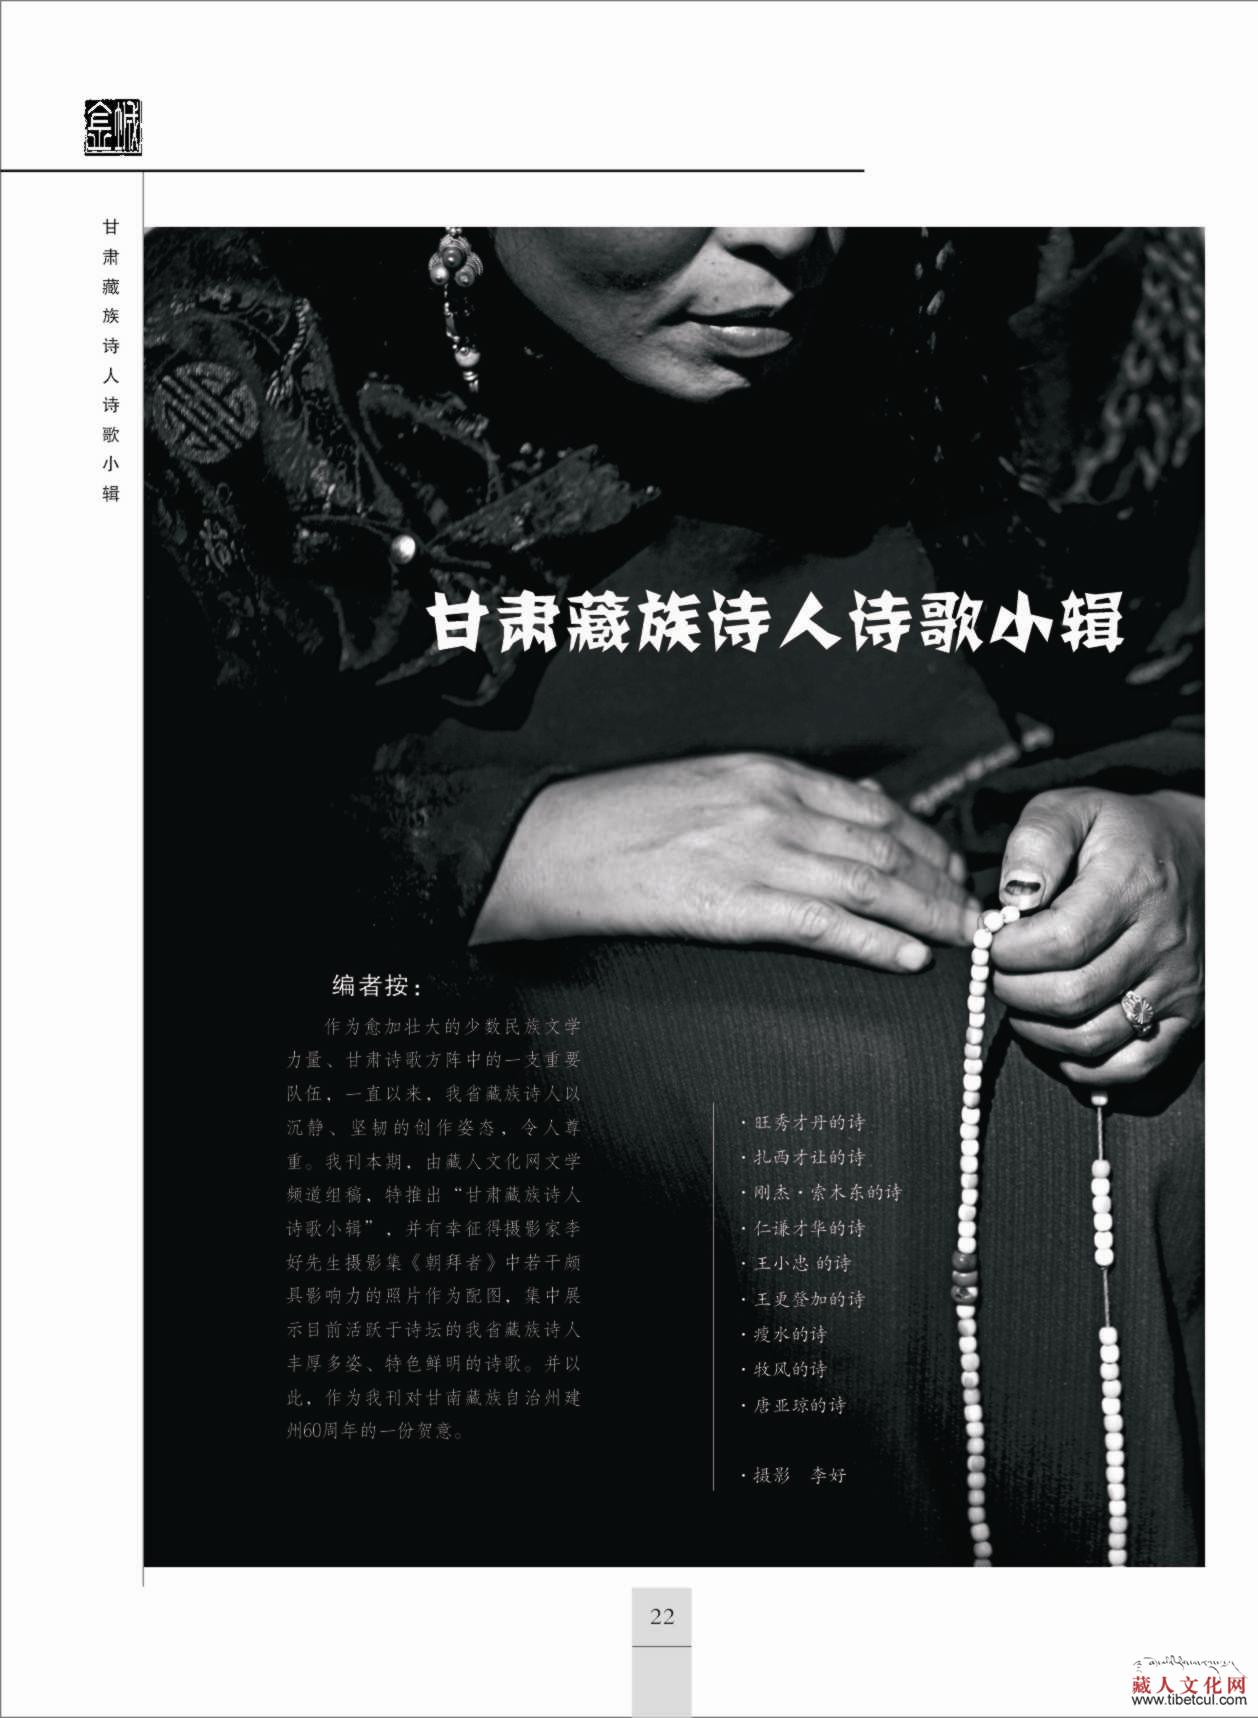 甘肃兰州文联《金城》杂志推出甘肃藏族诗人小辑